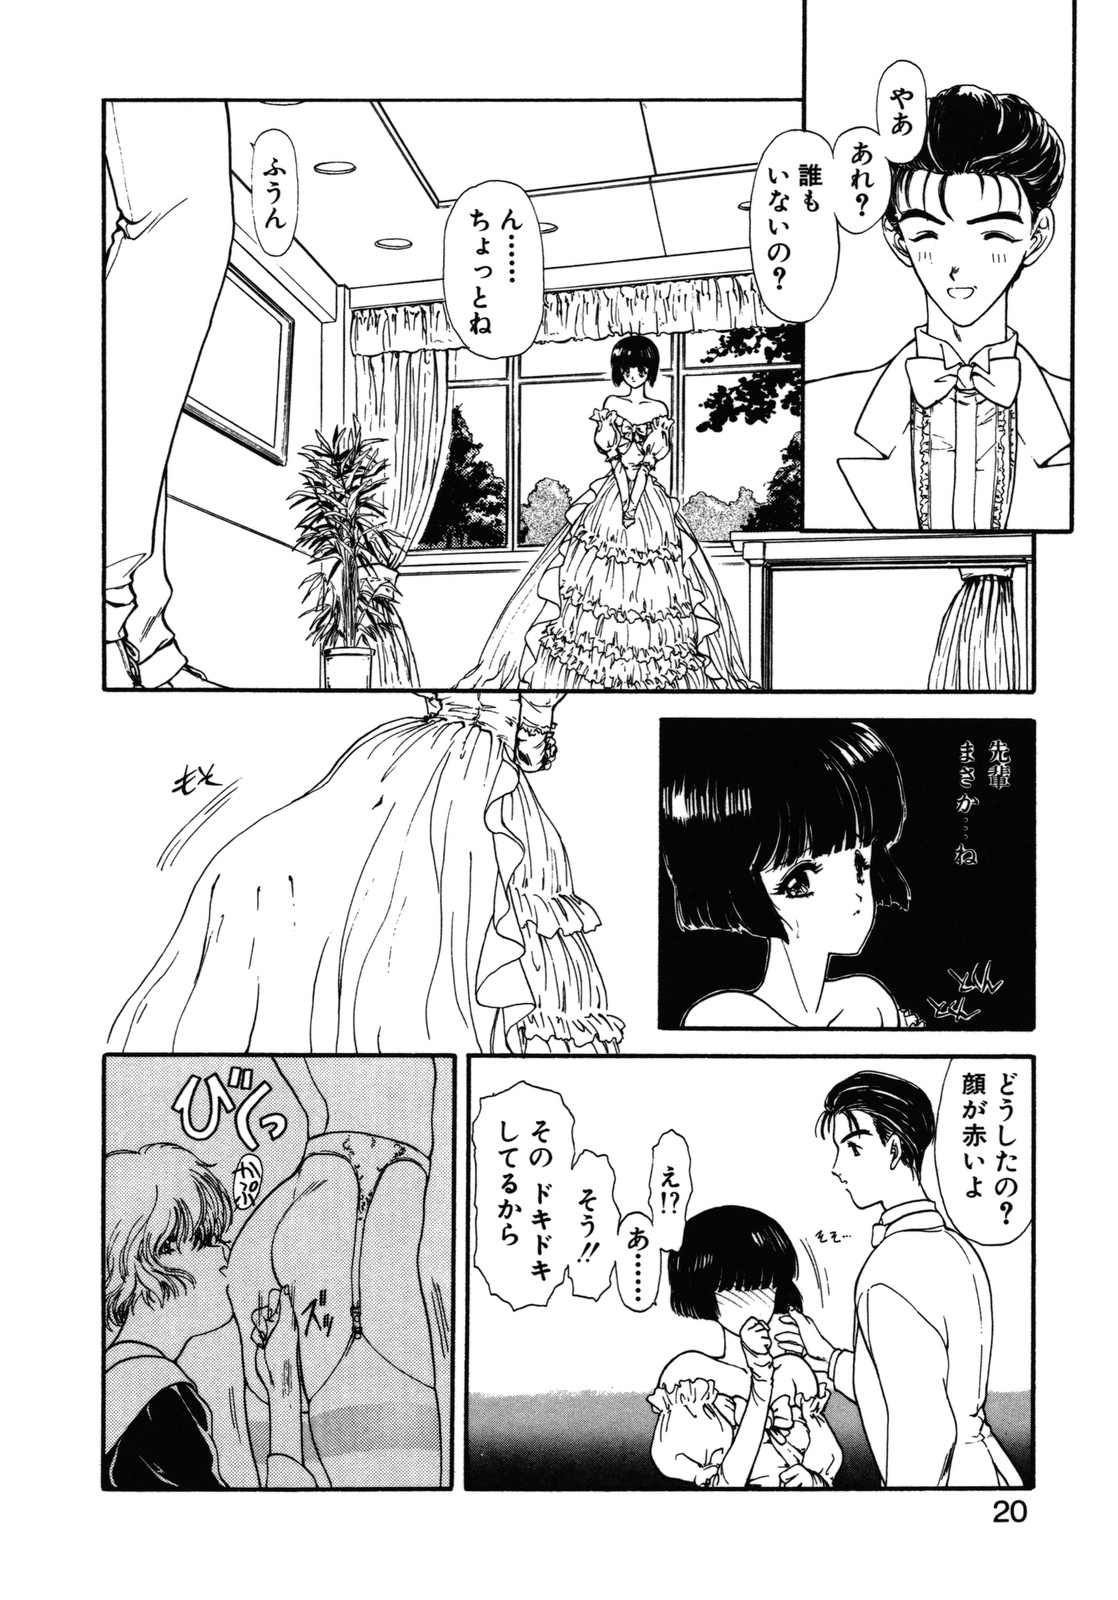 [Utatane Hiroyuki] COUNT DOWN page 21 full